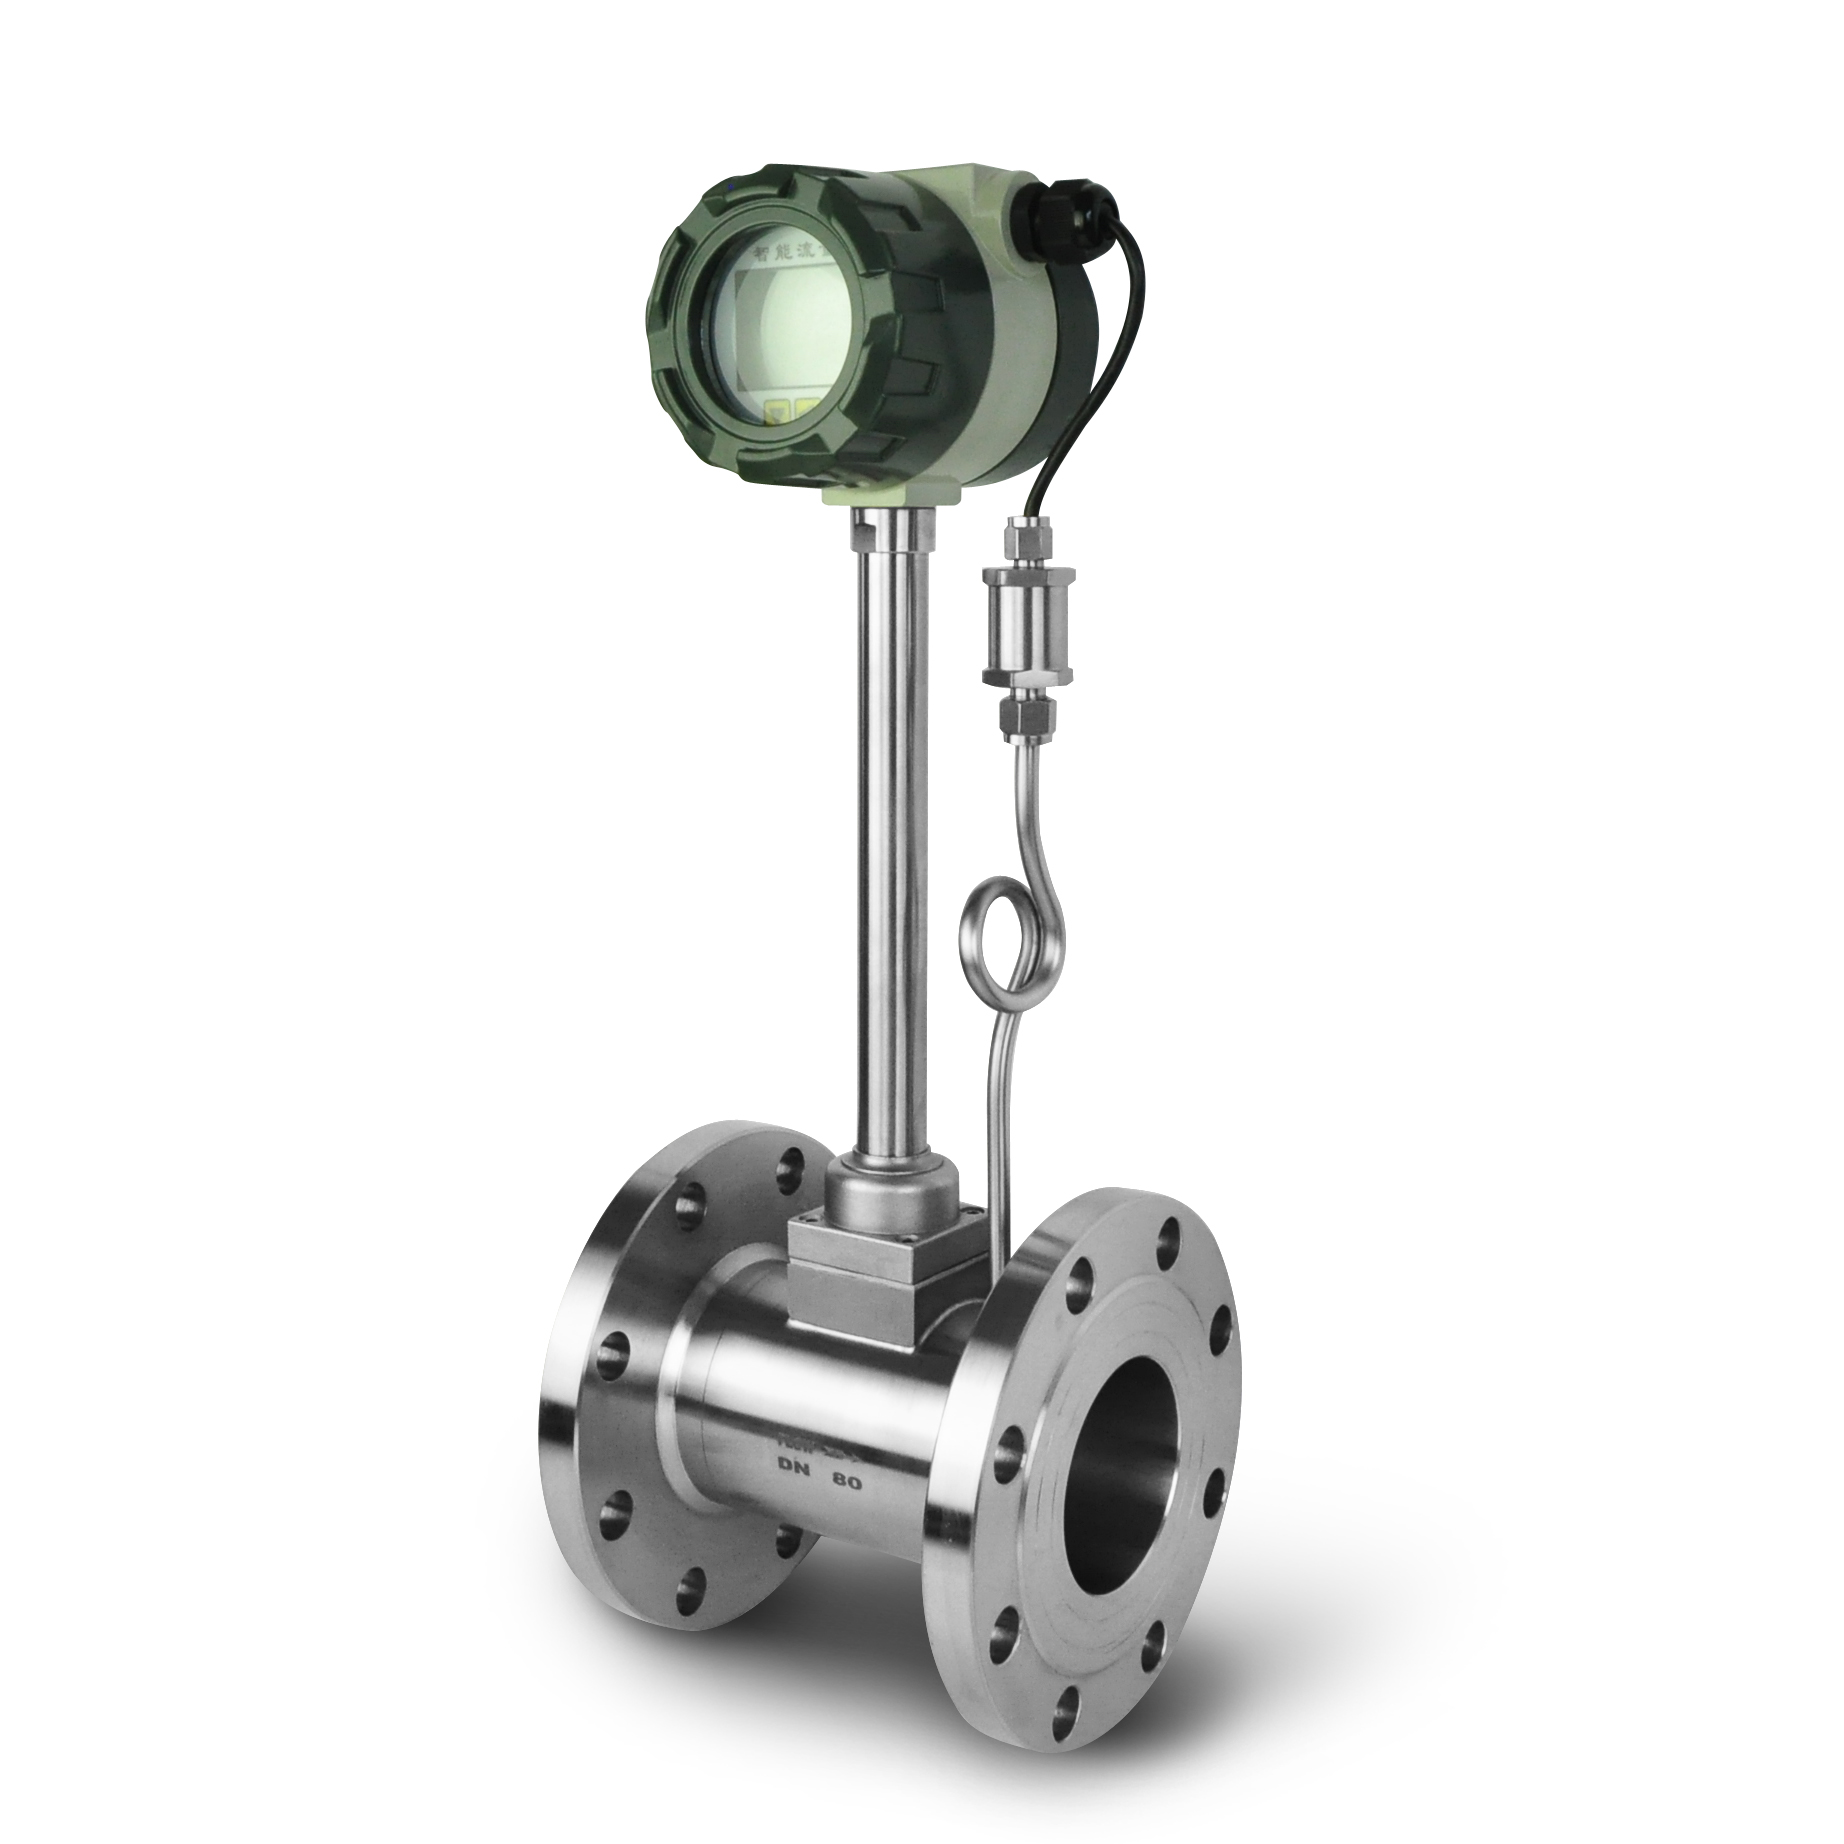 2 inche flow meter- Vortex flowmeter for steam measurement